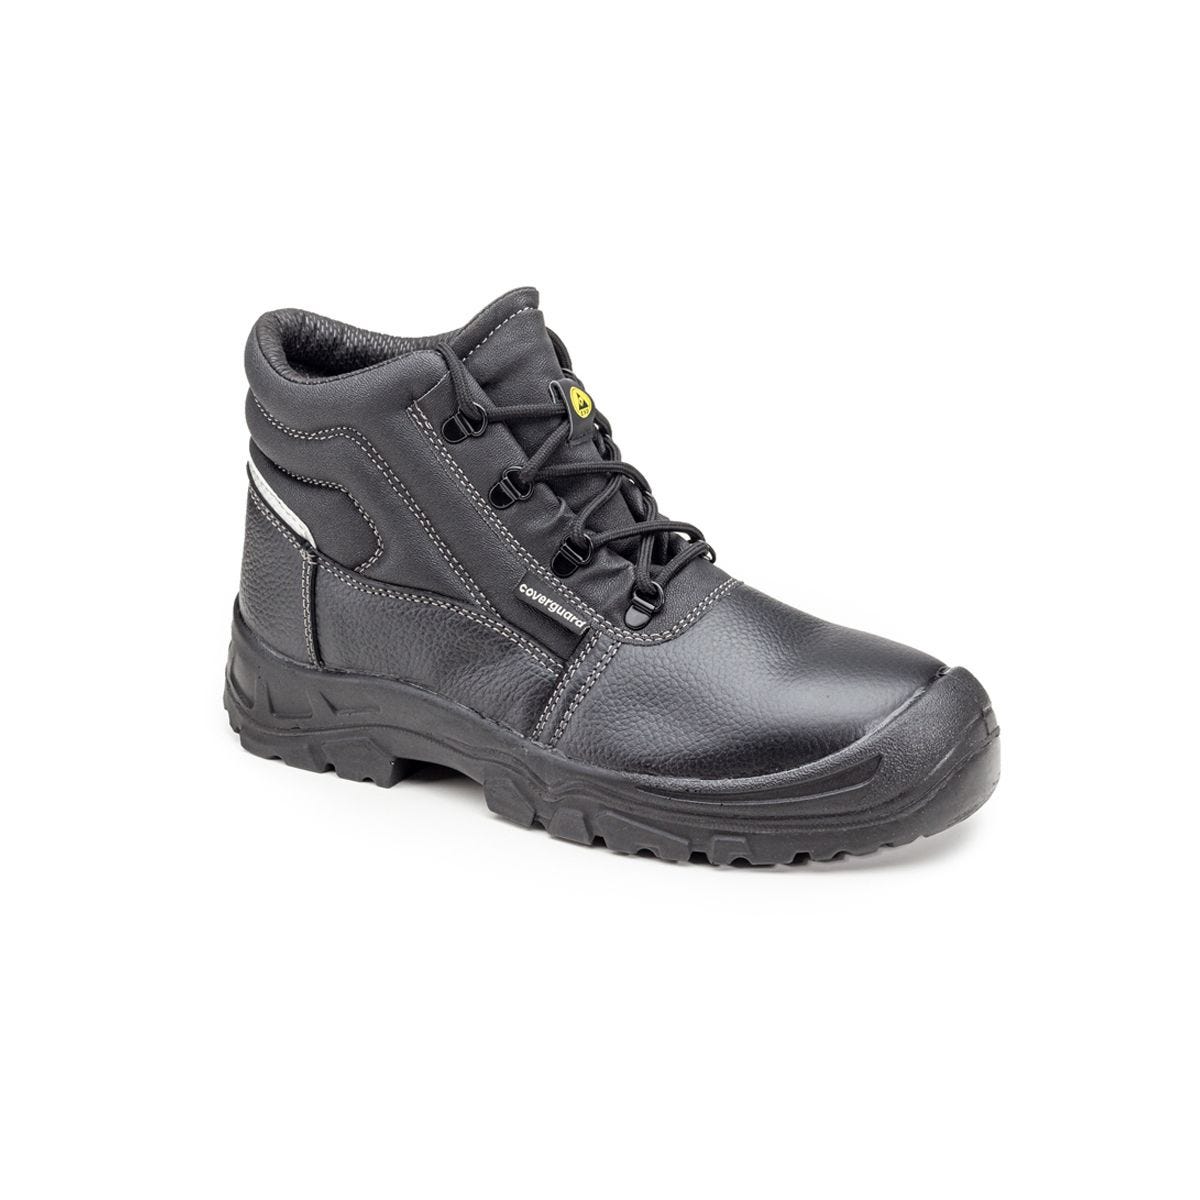 Chaussures de sécurité hautes Azurite II S3 ESD noir - Coverguard - Taille 44 0